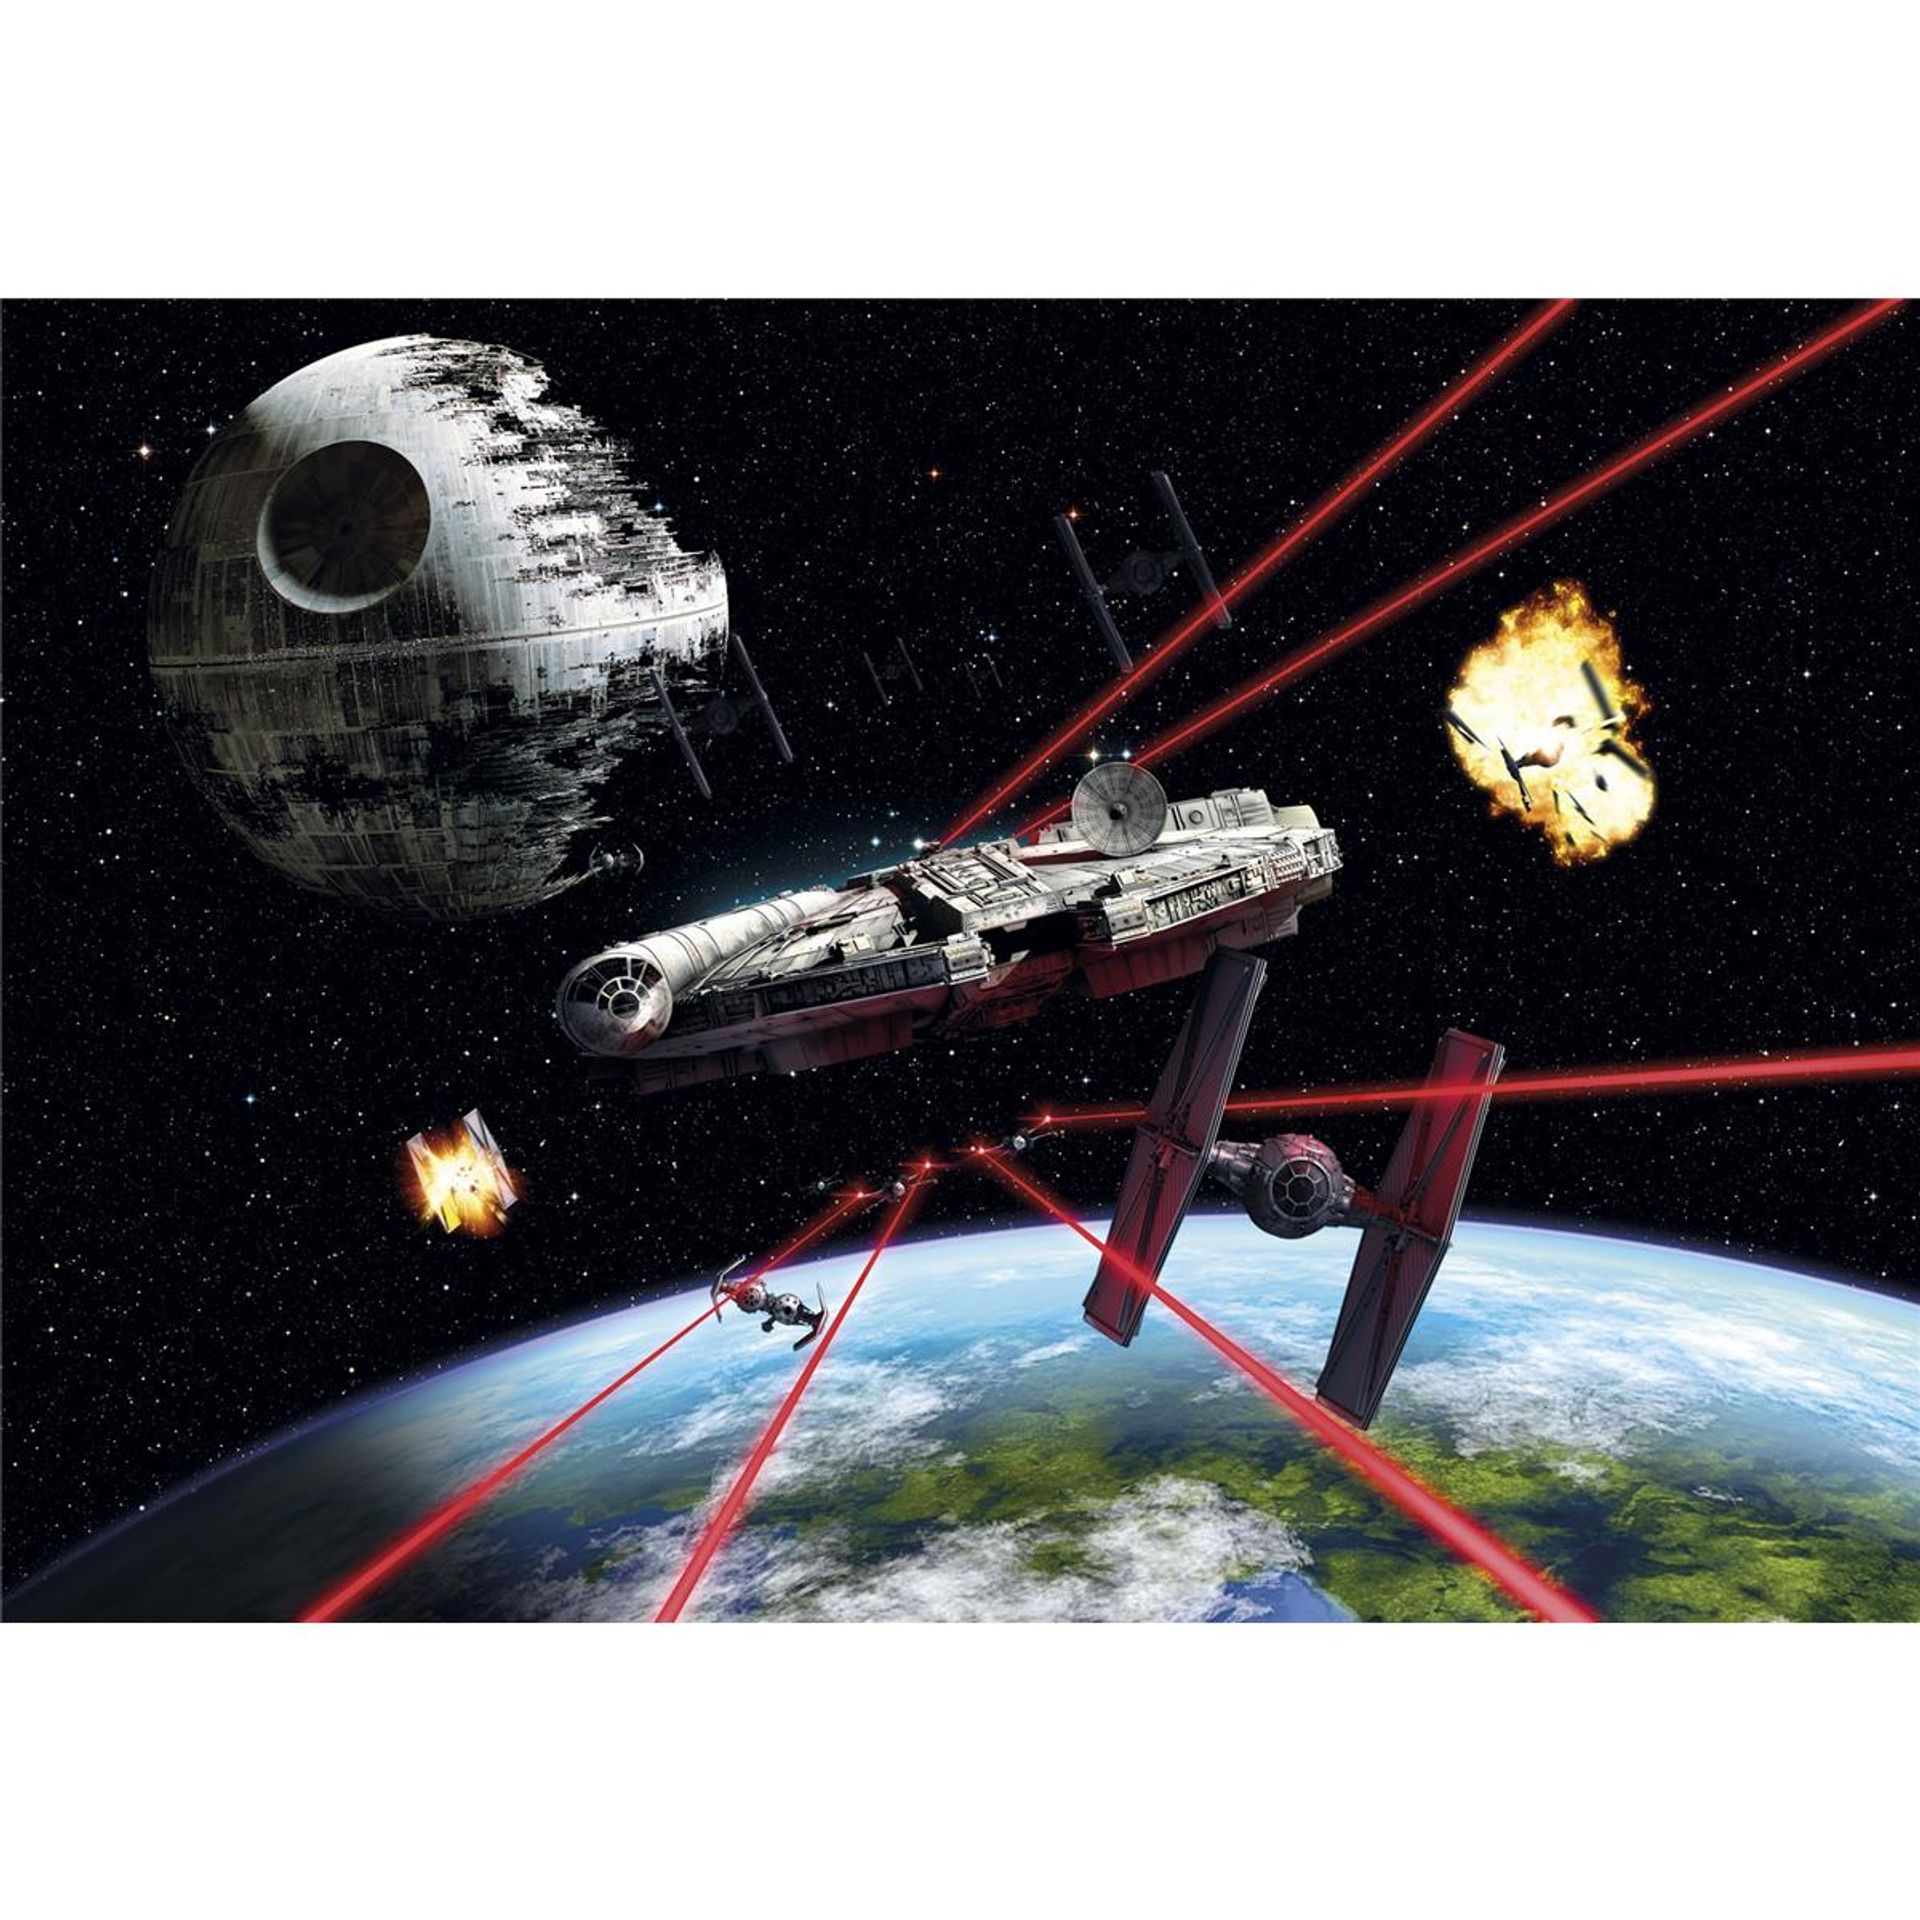 Papier Fototapete - Star Wars Millennium Falcon - Größe 368 x 254 cm